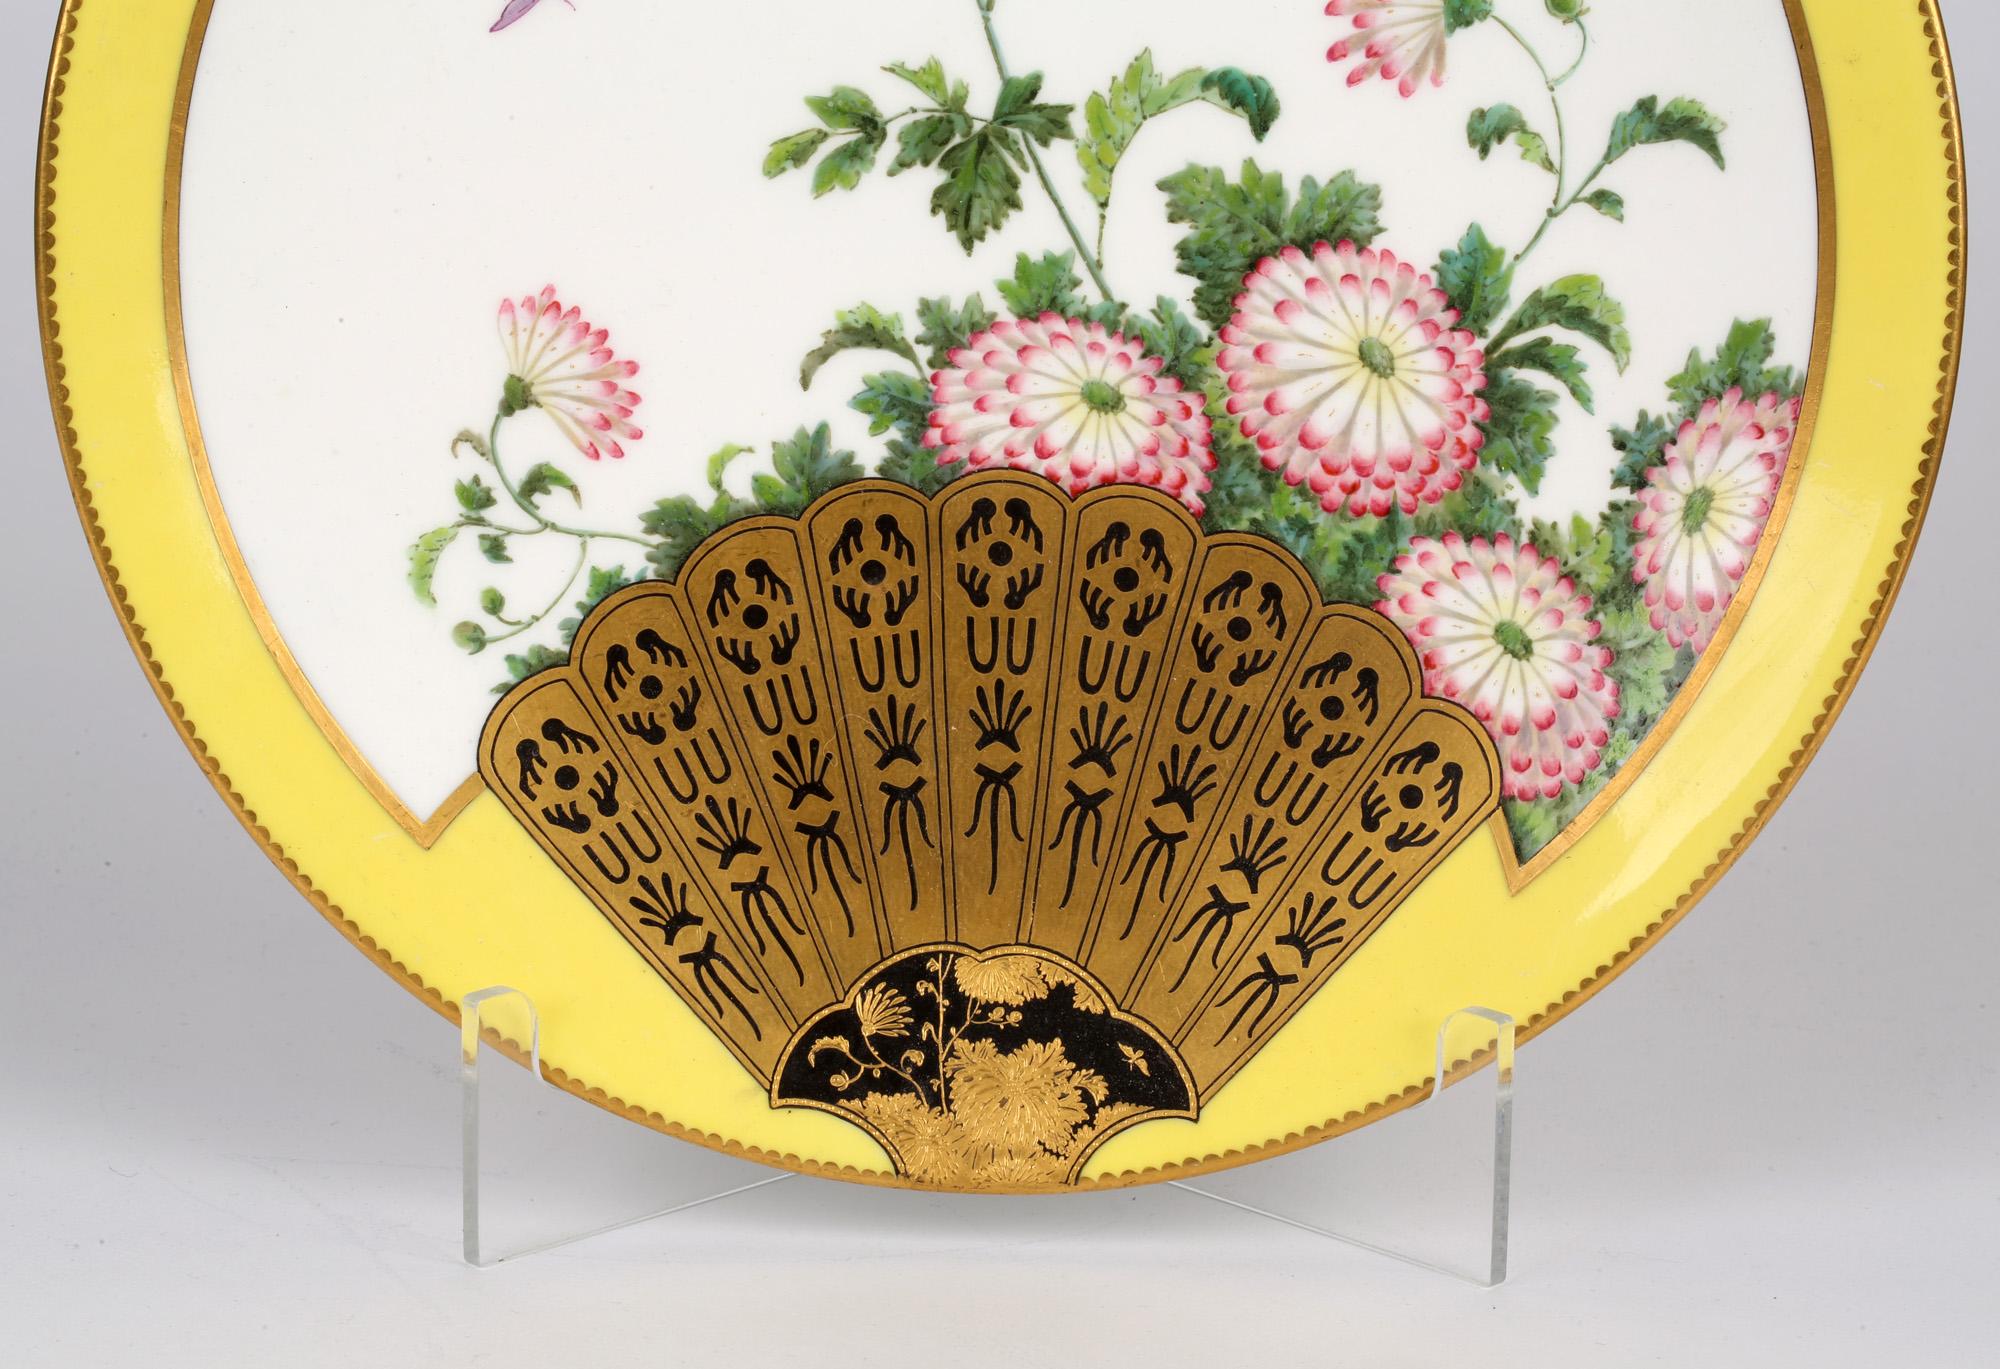 Très belle assiette de cabinet en porcelaine du Mouvement esthétique, décorée dans le style japonais, attribuée à Christopher Dresser et datée de 1877. L'assiette, probablement de Minton, est finement réalisée en porcelaine blanche avec une forme